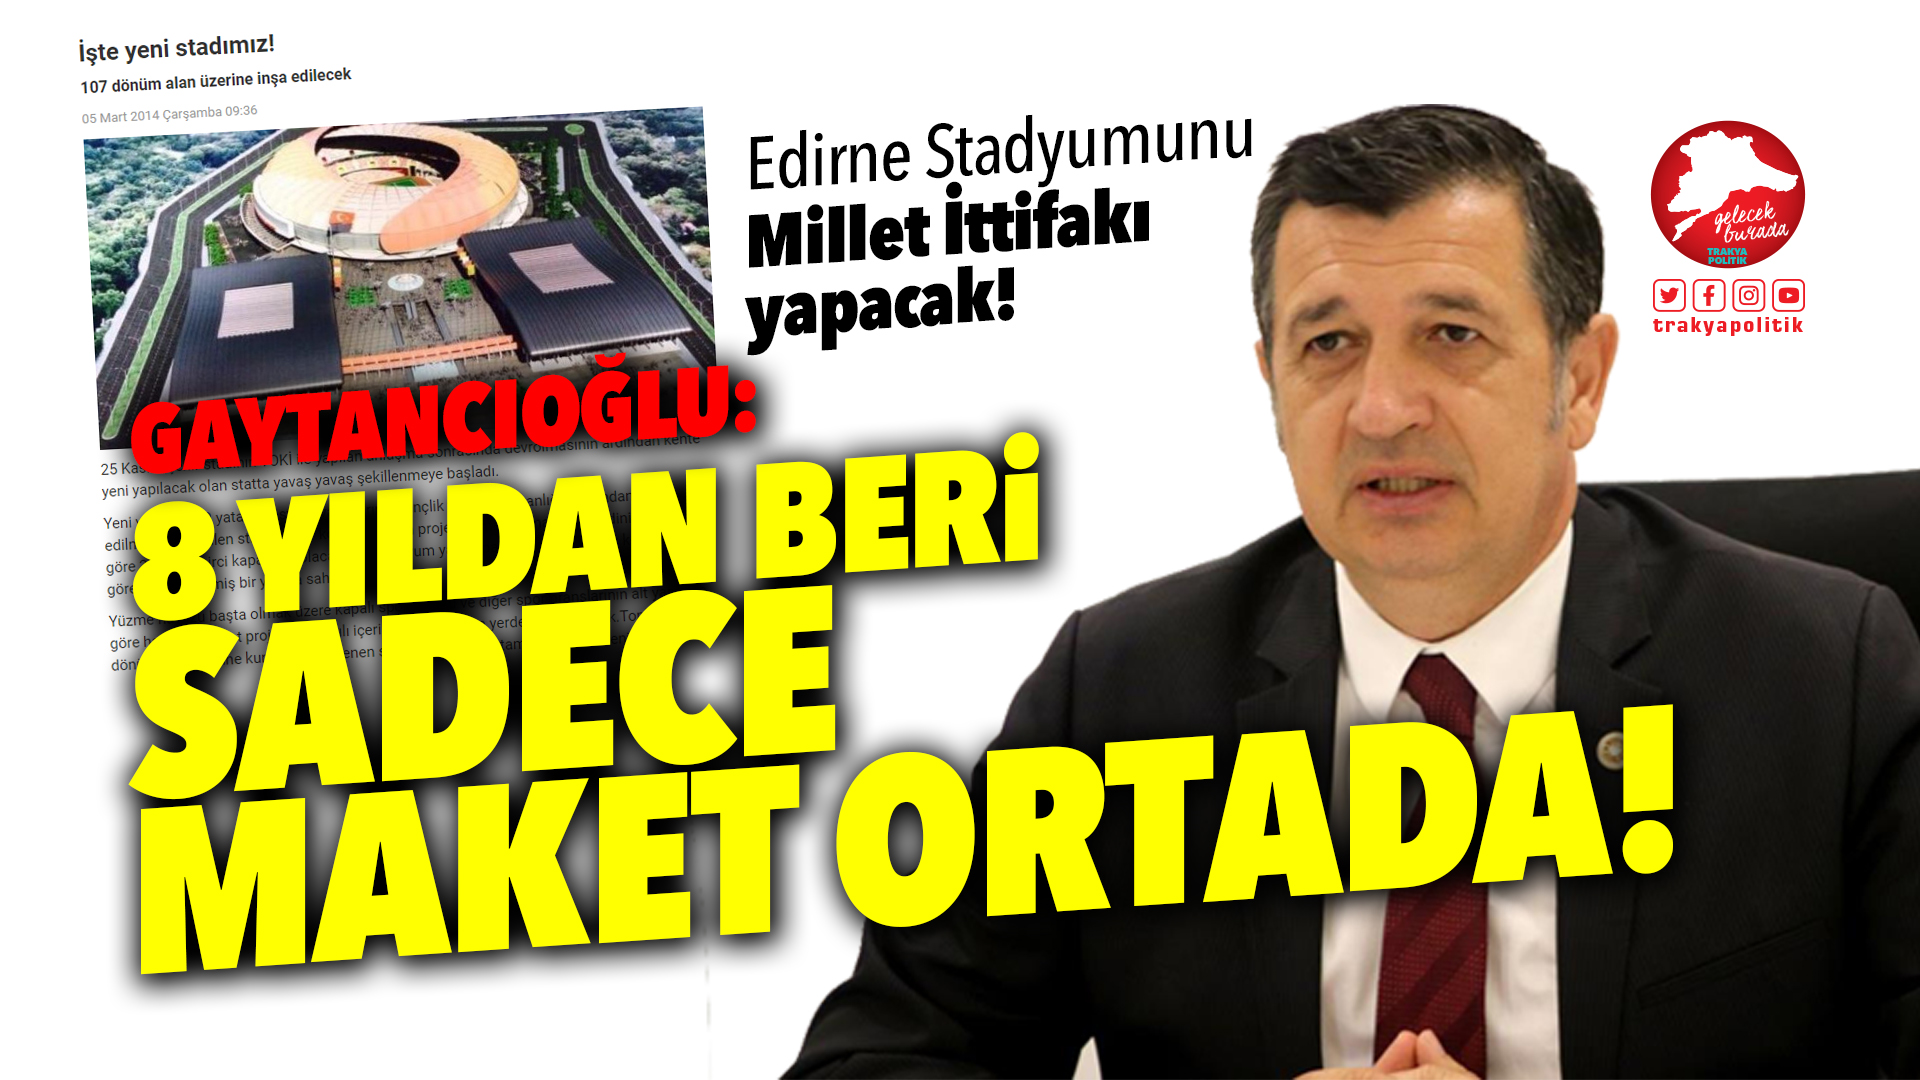 Gaytancıoğlu: “Edirne Stadyumu’nu Millet İttifakı yapacak”